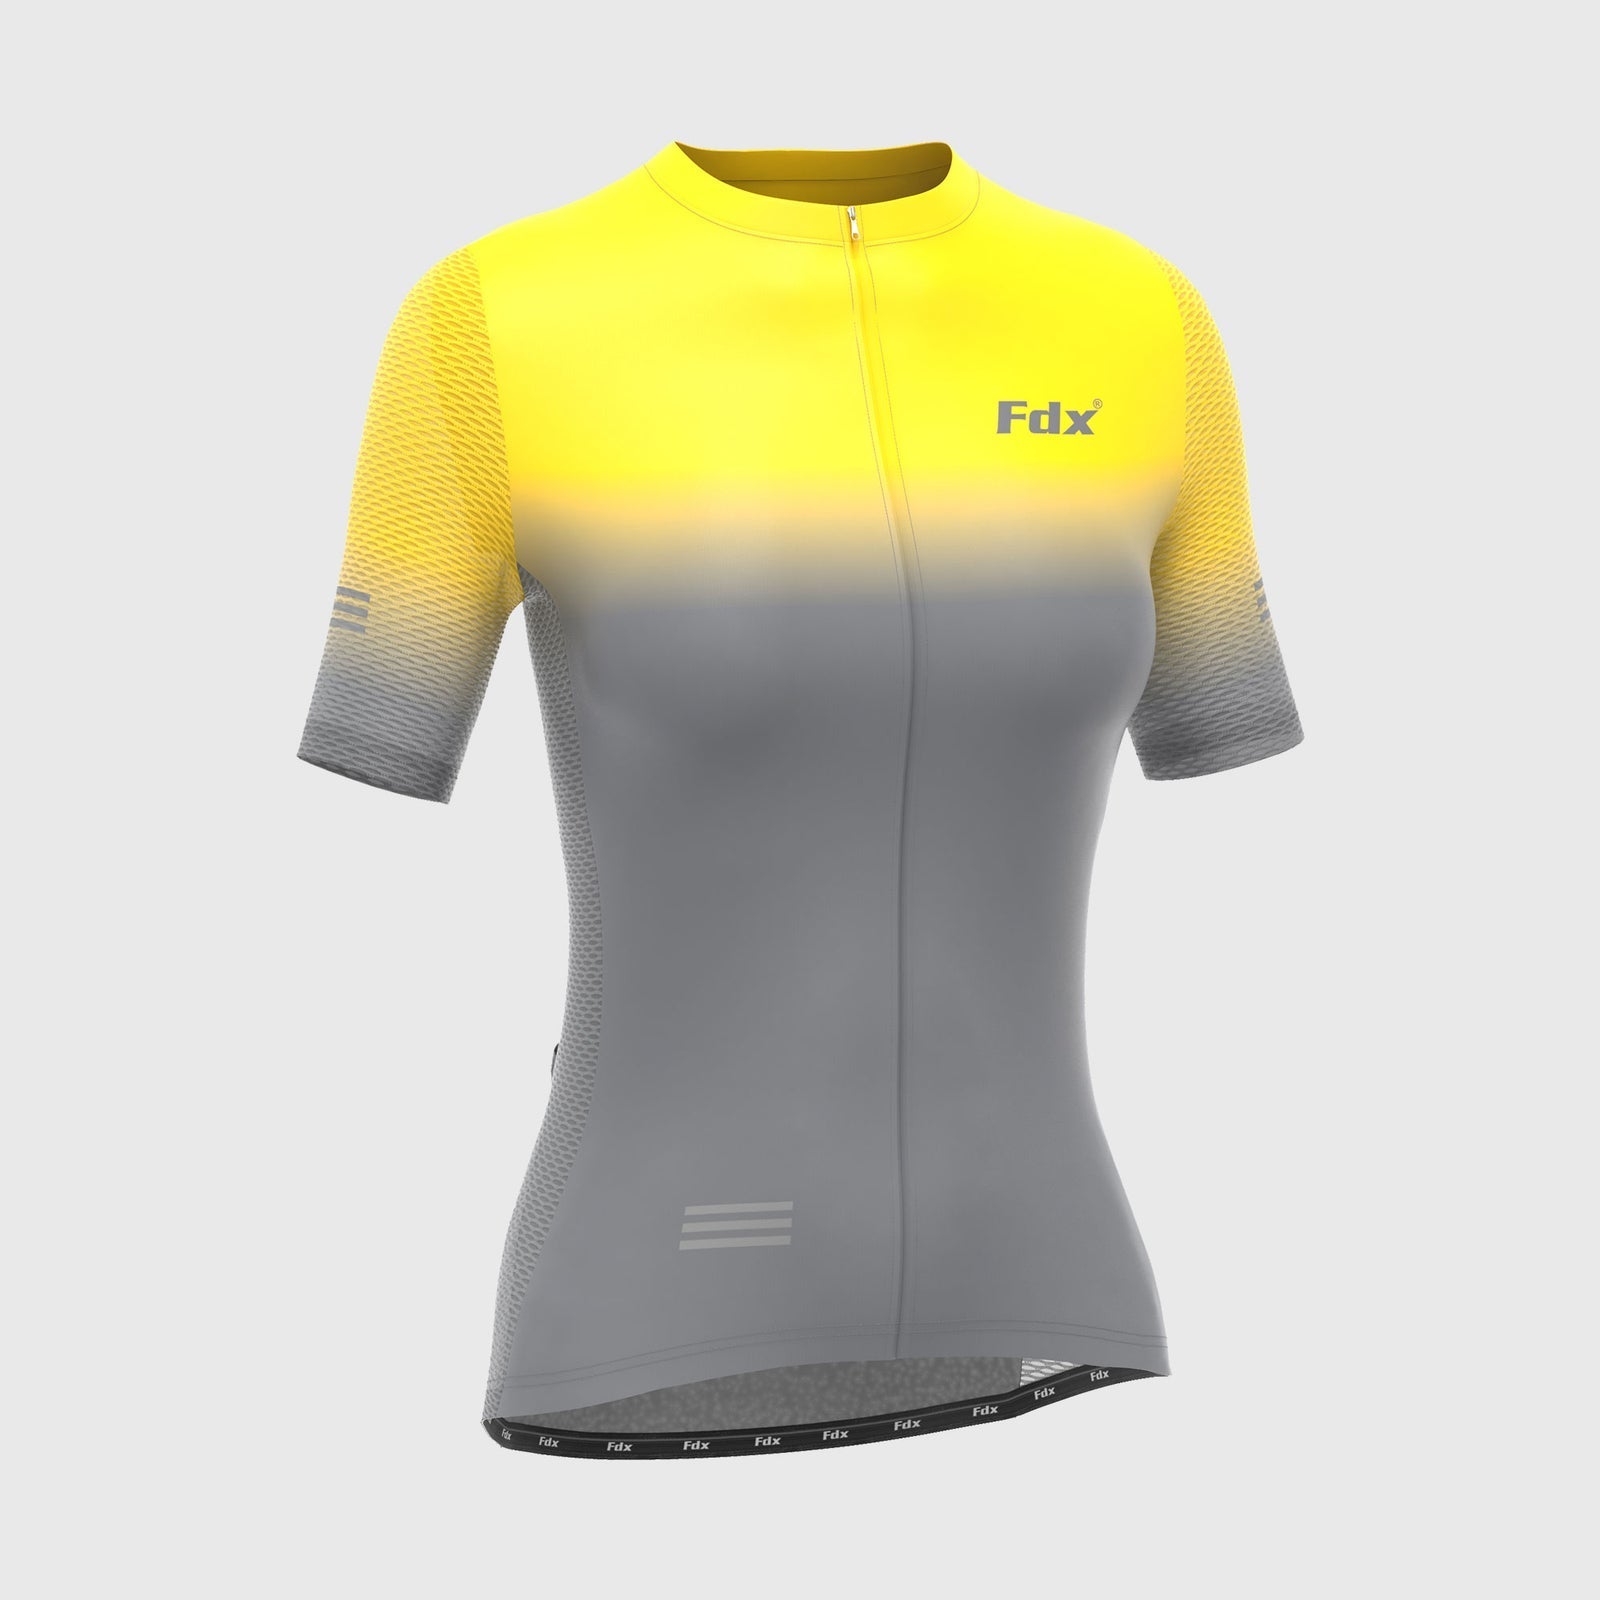 Fdx Duo Yellow / Grey Women's Short Sleeve Summer Cycling Jersey